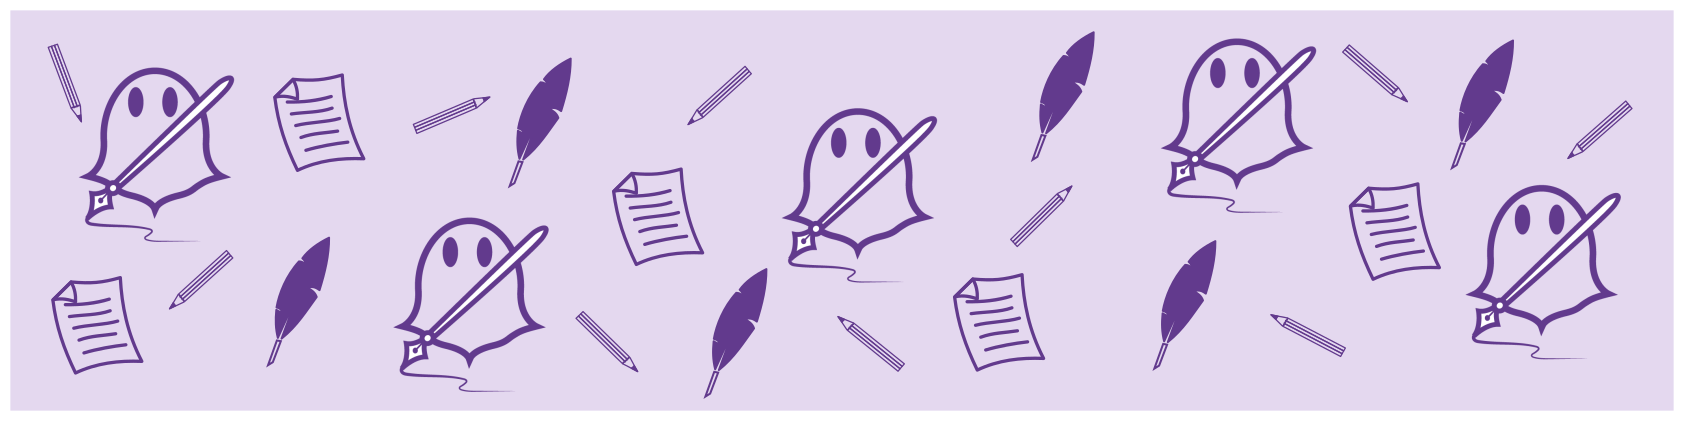 Violetter Klopfgeist "Inspiration" mit Schreibfeder-, Bleistift- und Schriftstück-Icons auf lavendelfarbenem Hintergrund für Blog | Klopfecke - Texte mit Geist